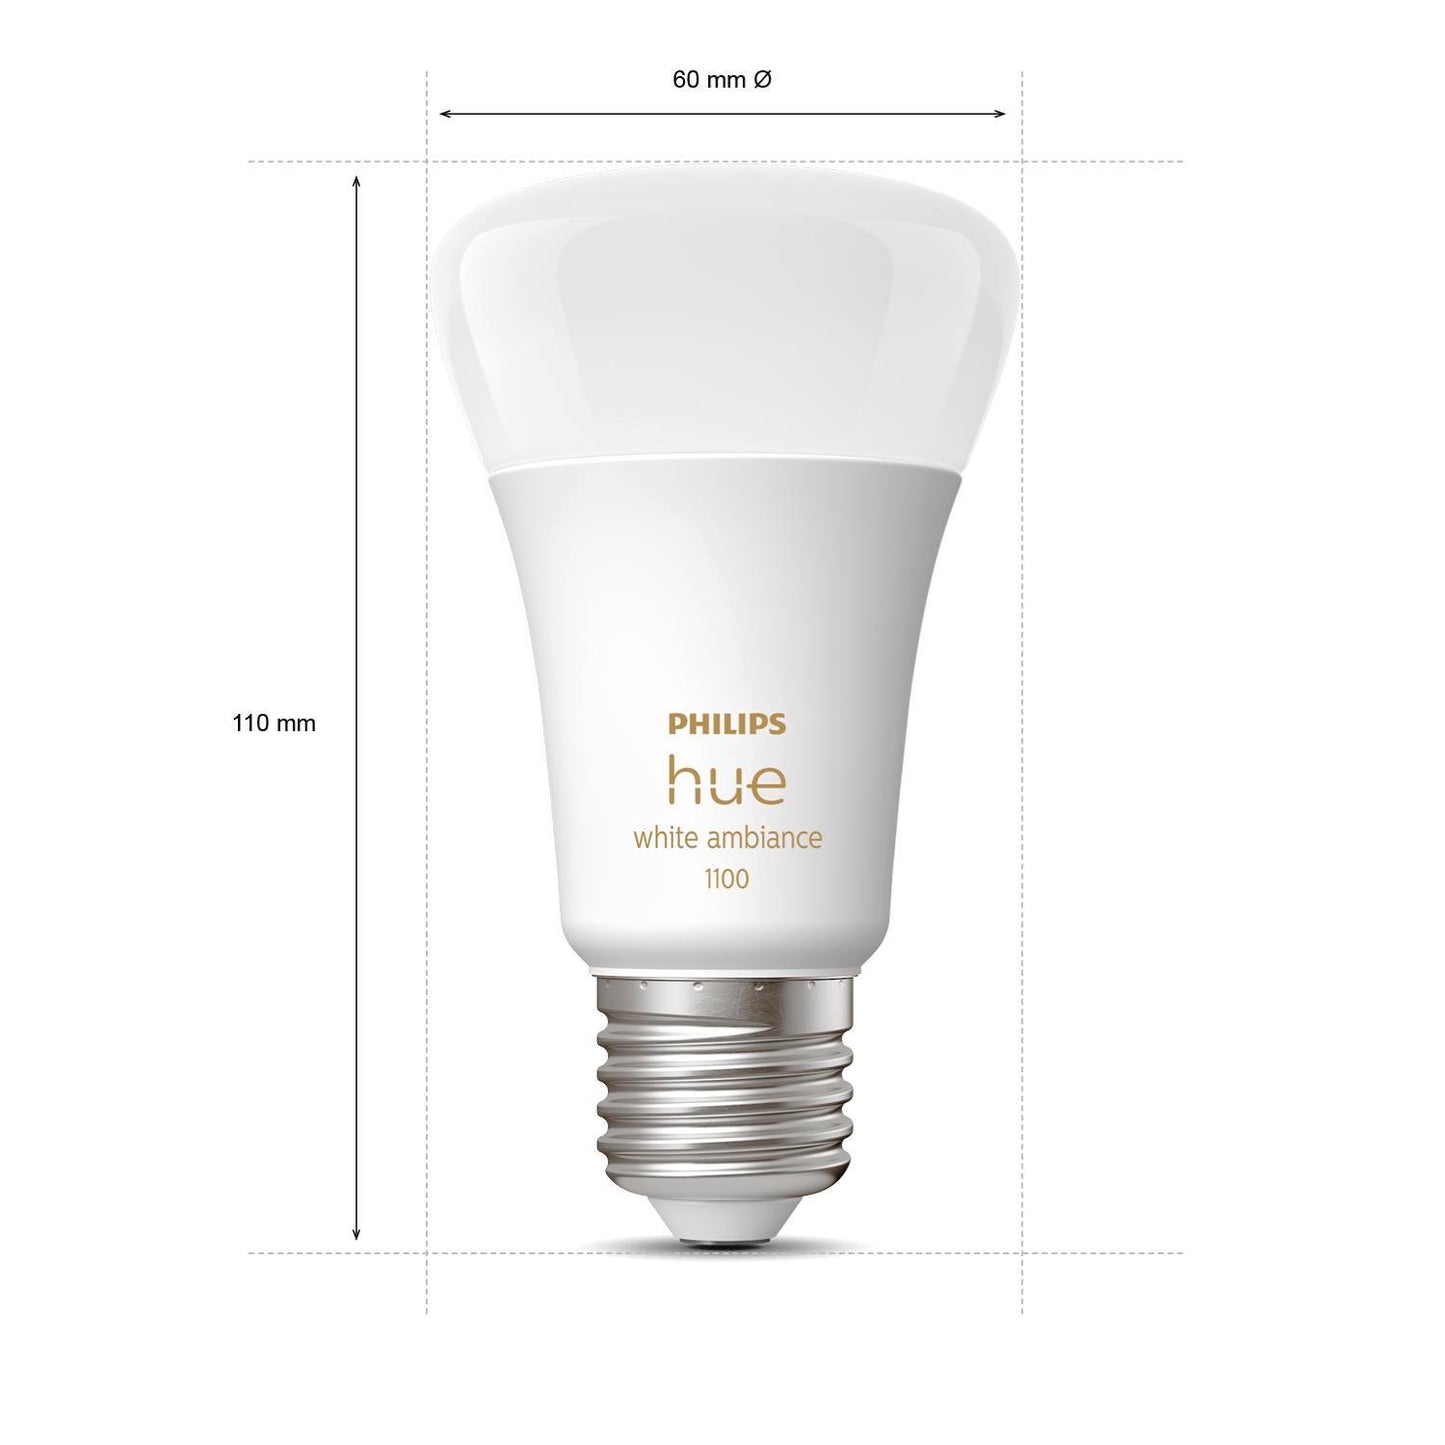 PHILIPS Hue White Ambiance E27 LED Lamp - Set of 2